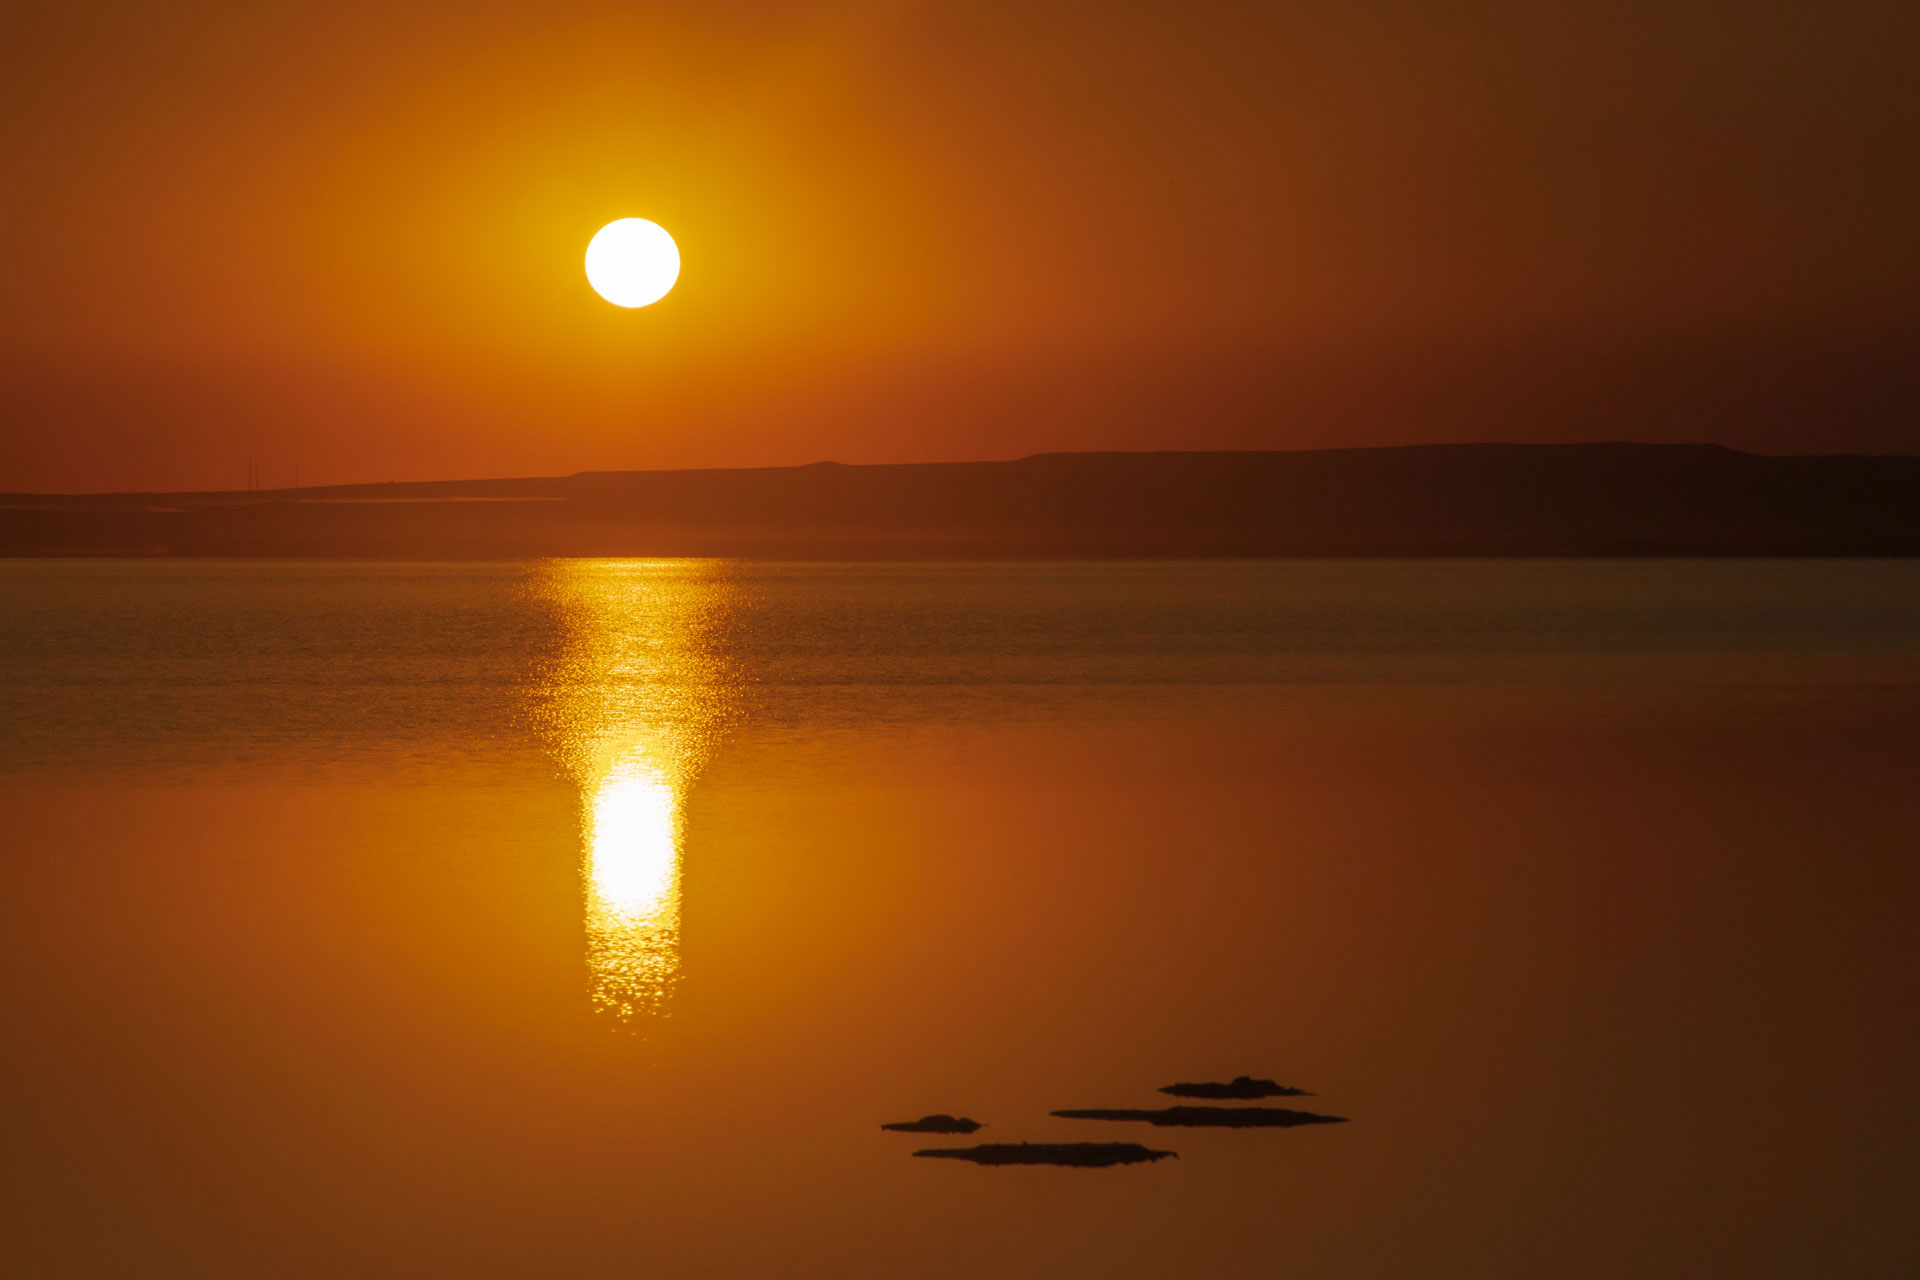 Tuz Gölü Fotoğrafları Tuz gölü resimleri Sunset Gün batımı fotoğrafları Çekergezer Hakan Aydın Fotoğrafları Tuz Gölü görselleri